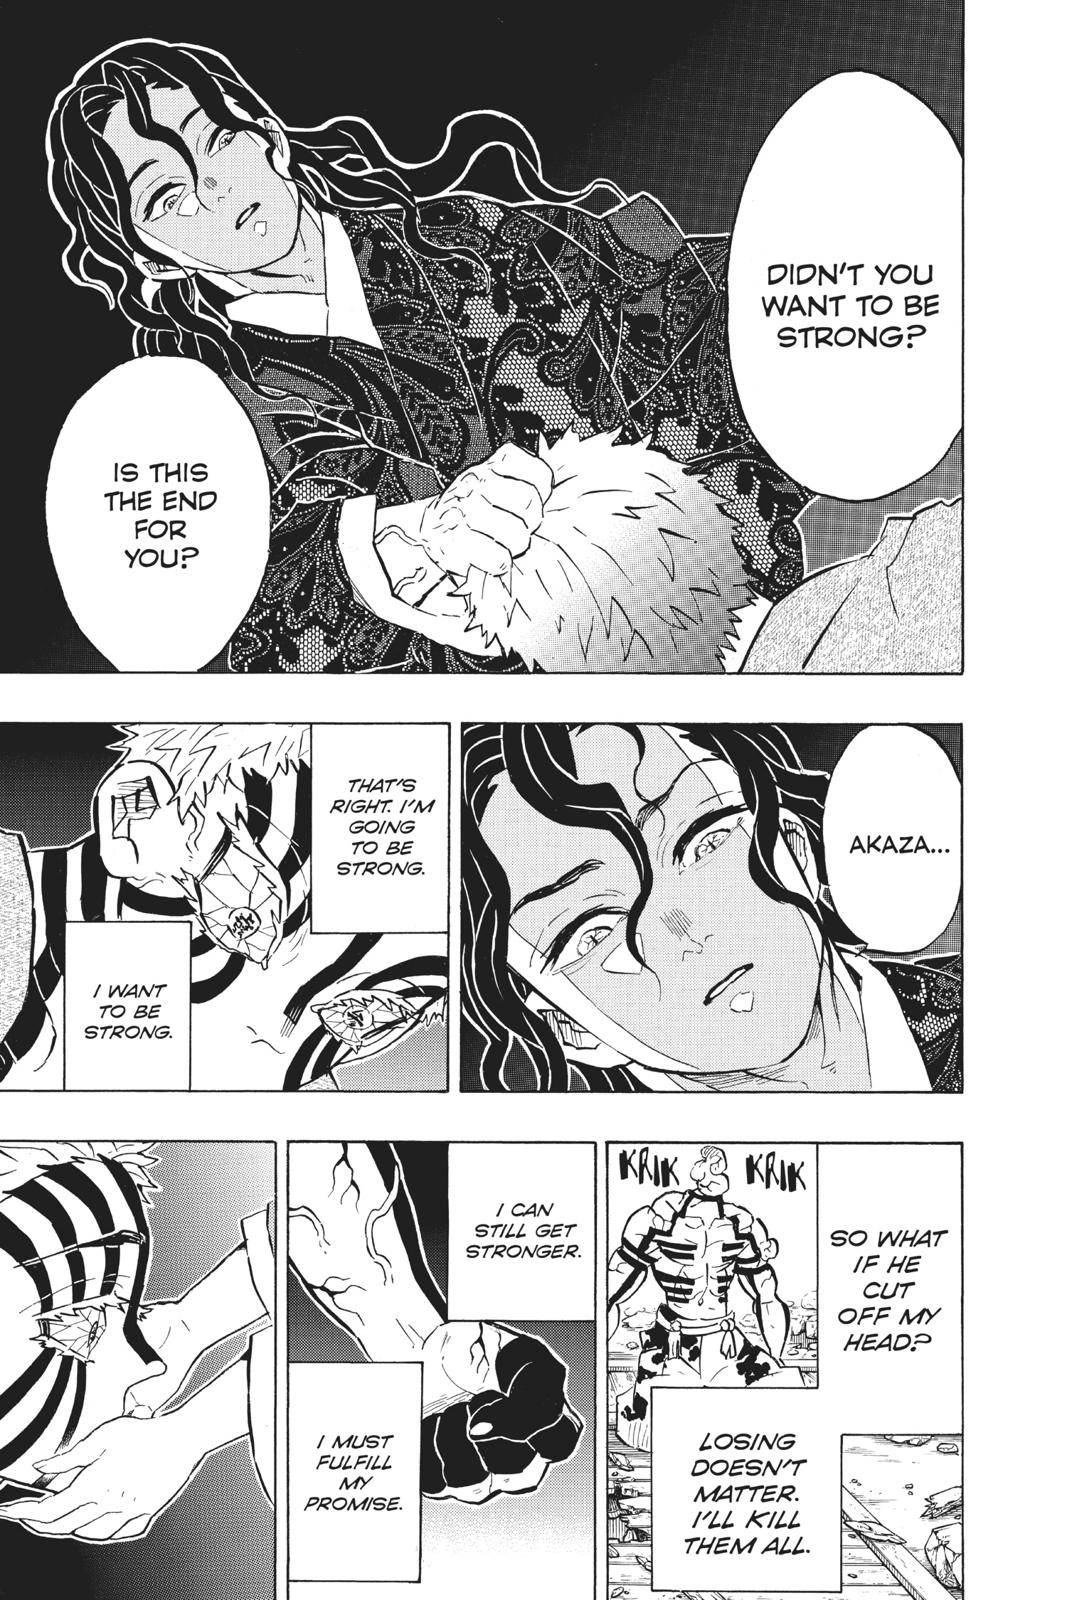 Demon Slayer Manga Manga Chapter - 156 - image 16